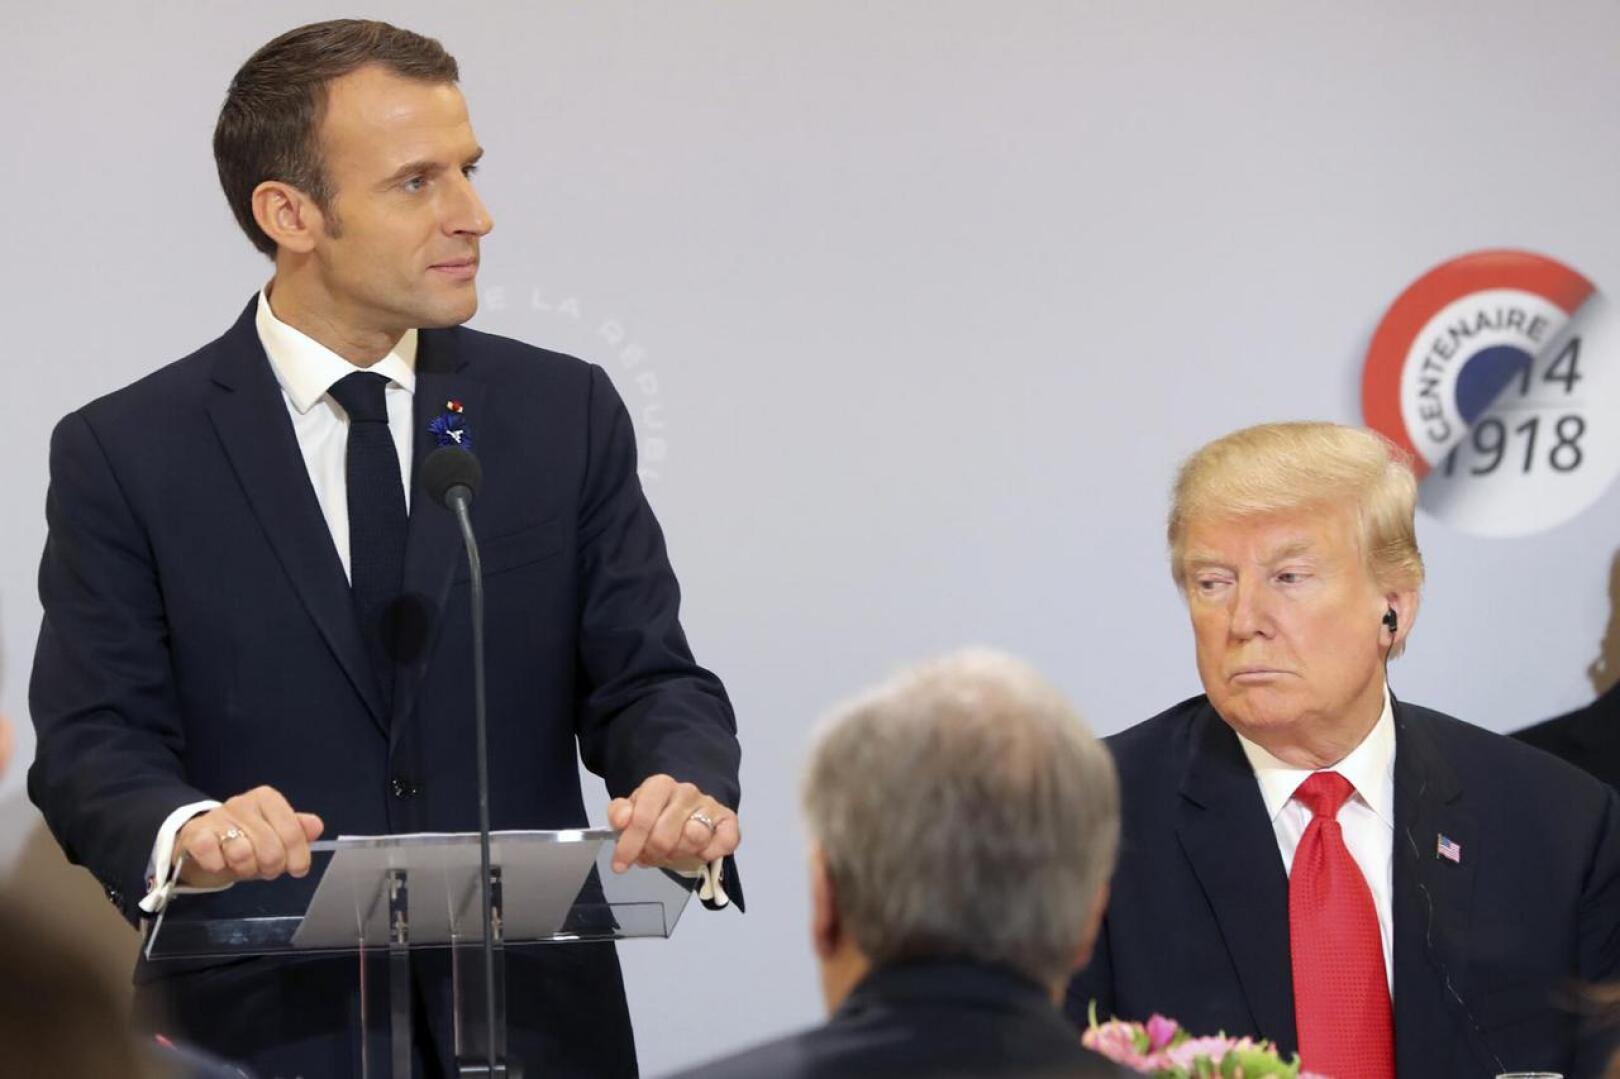 Ranskan presidentti Emmanuel Macron piti puheen viime sunnuntaina ensimmäisen maailmansodan päättymisen muistopäivänä Pariisissa ja Yhdysvaltain presidentti Donald Trump kuunteli.